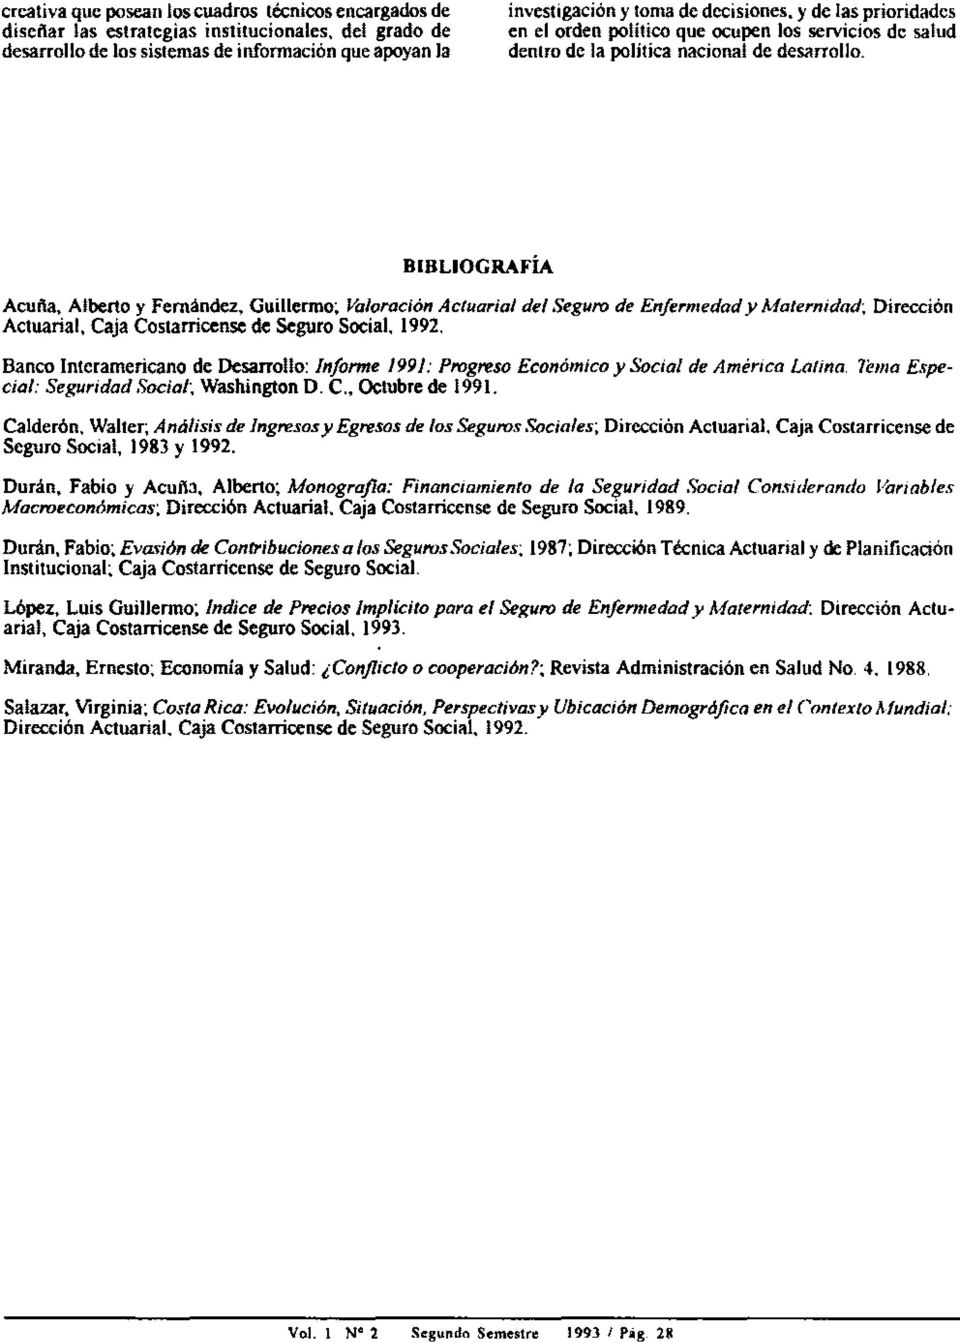 Guillermo; Valaración Actuarial del Seguro de Enfermedad y Maternidad; Dirección Actuarial. Caja Costarricense de Seguro Social, 1992.